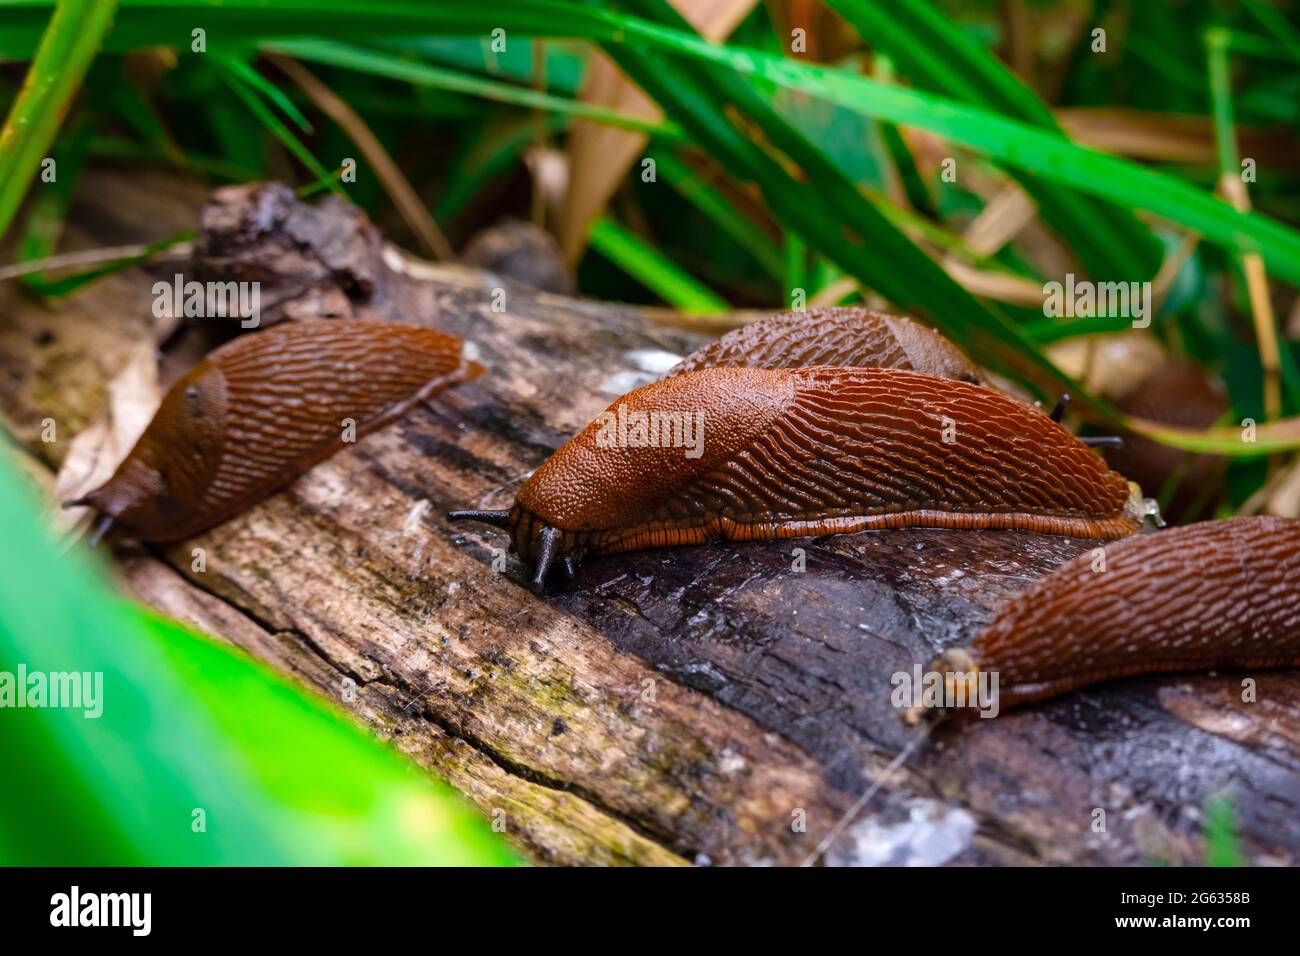 Vue rapprochée de la slug espagnole brune commune sur bois à l'extérieur. De grandes limaces d'escargot brunes rampant dans le jardin Banque D'Images